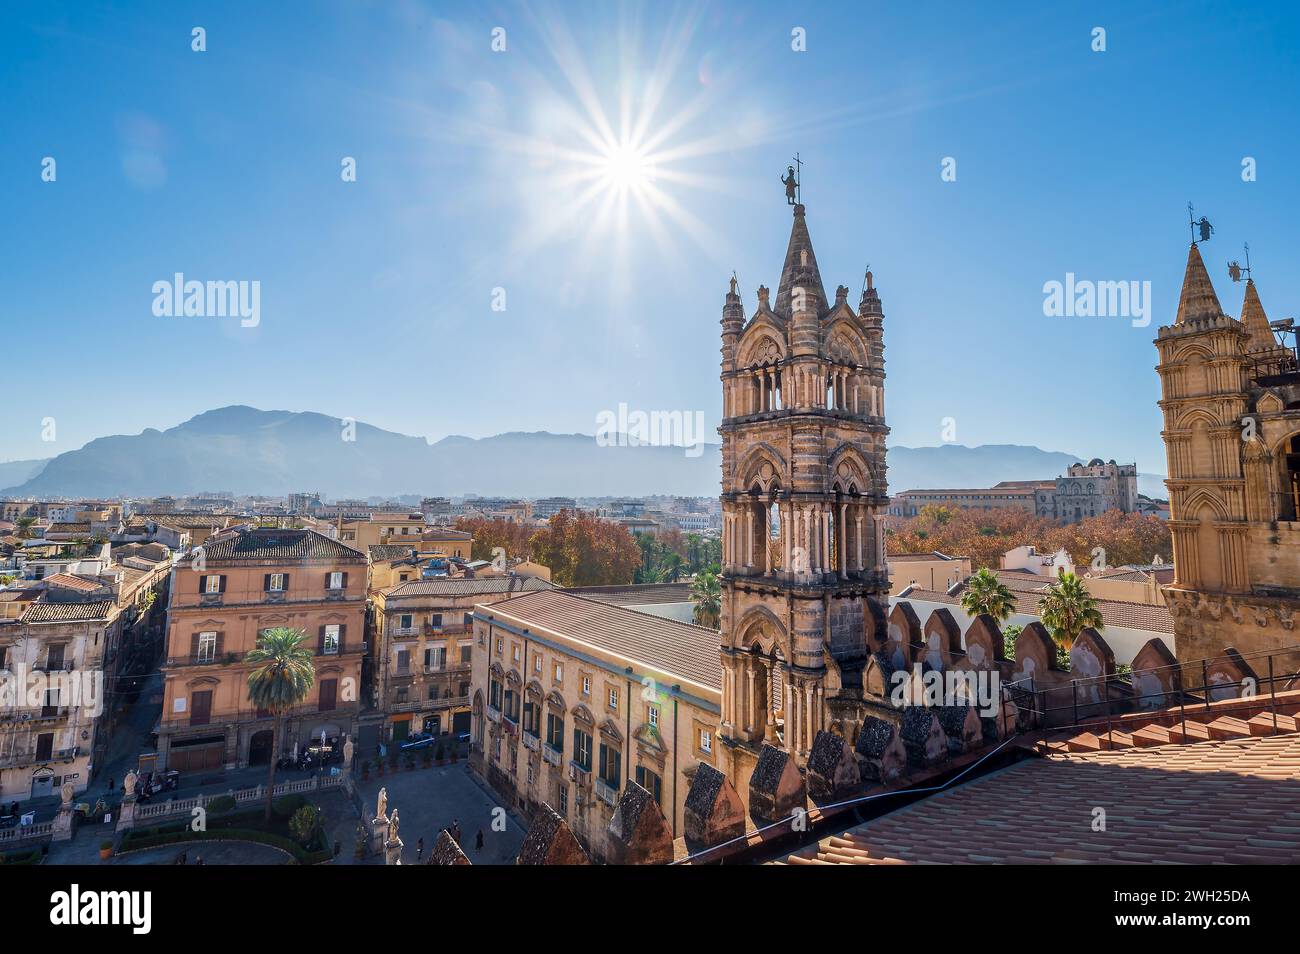 Nel cuore della vivace città di palermo, la maestosa cattedrale di palermo si erge alto con le sue guglie in pietra che si affacciano sul paesaggio Foto Stock